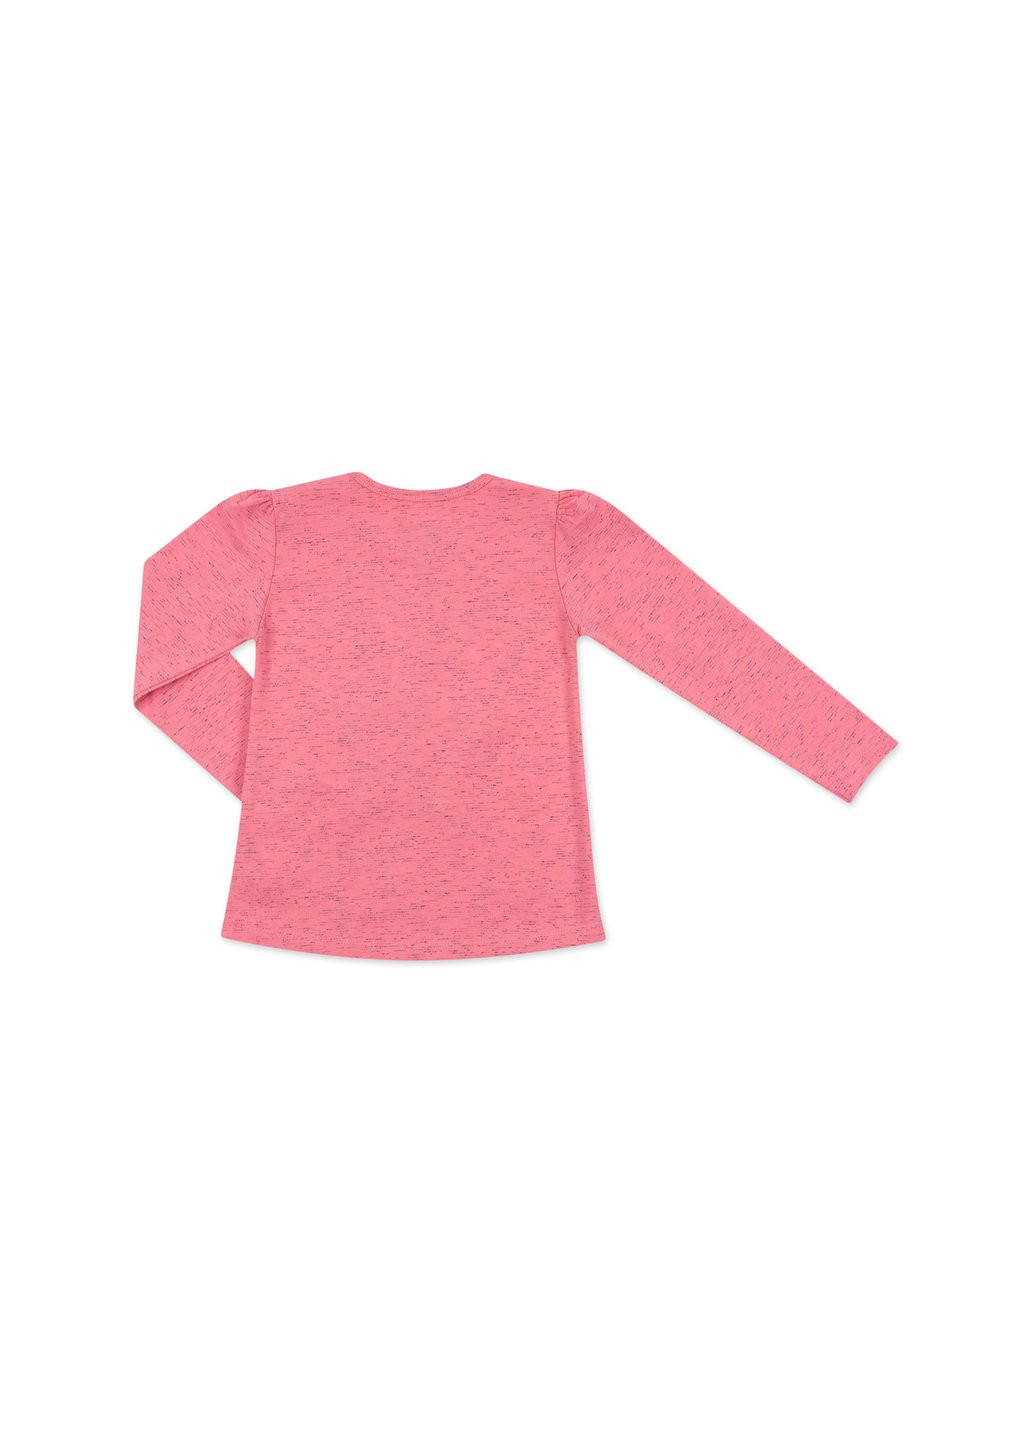 Комбинированный демисезонный набор детской одежды с объемной аппликацией (8401-110g-coral) Breeze